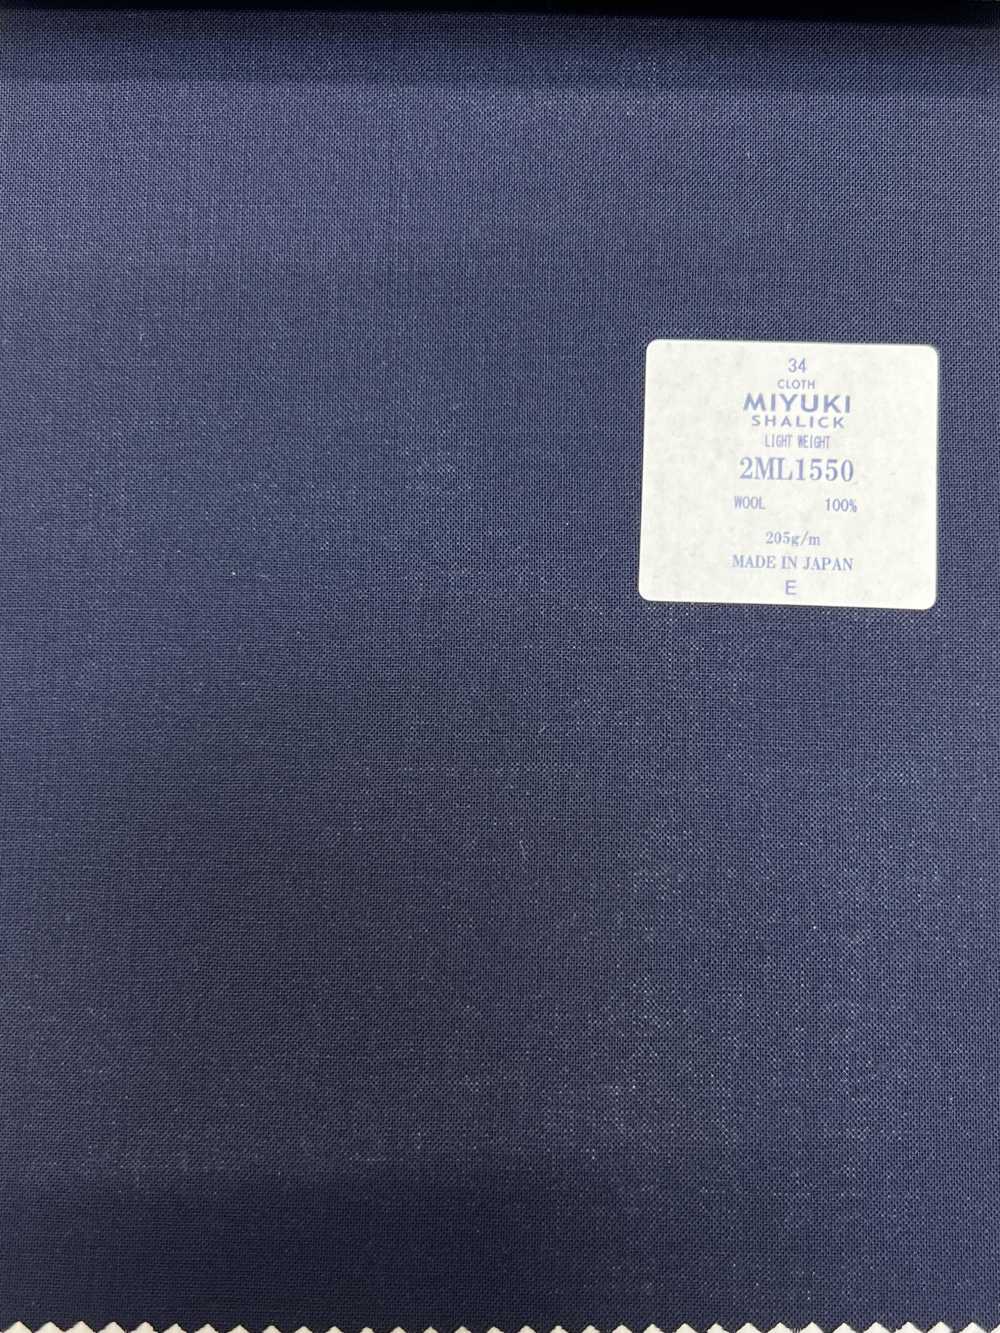 2ML1550 MIYUKI COMFORT SHALICK LEICHTES GEWICHT Navy[Textil] Miyuki-Keori (Miyuki)